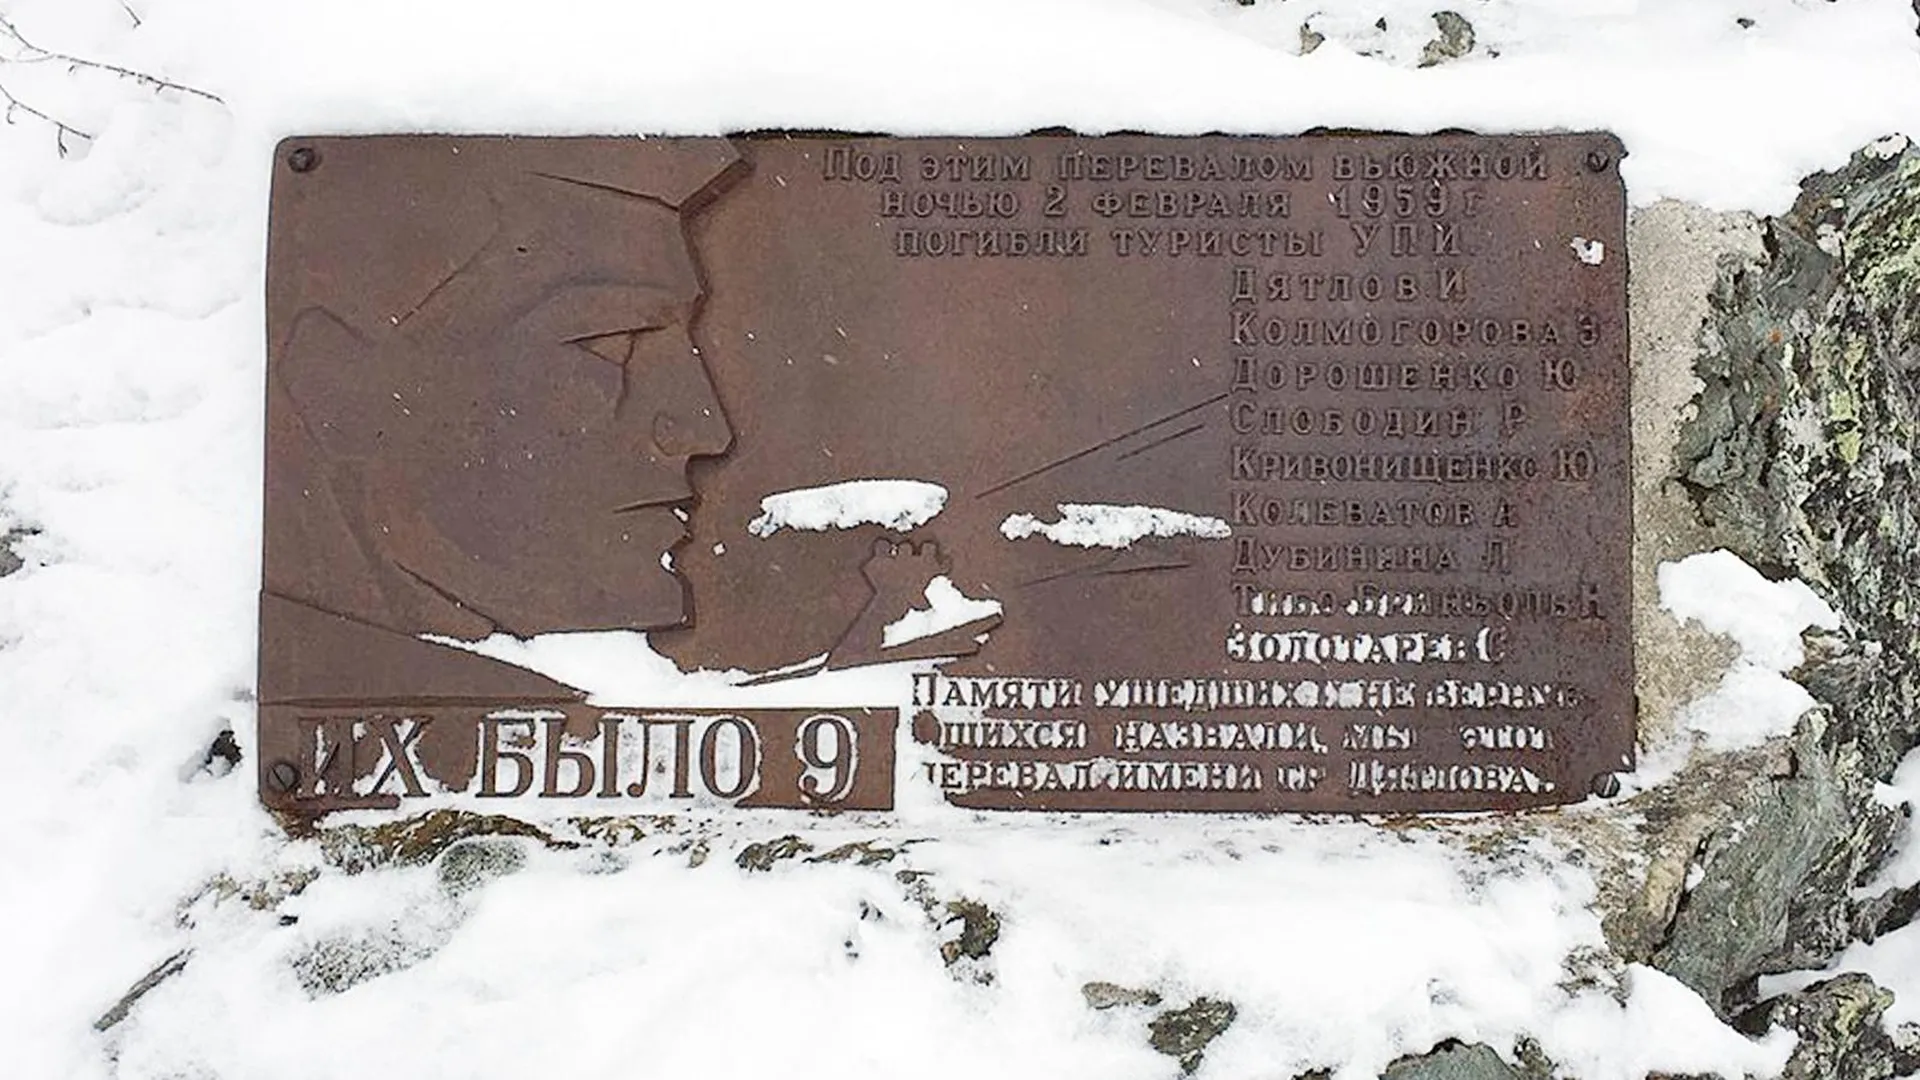 Мемориальная табличка в память о погибших дятловцах, установленная в 1963 году